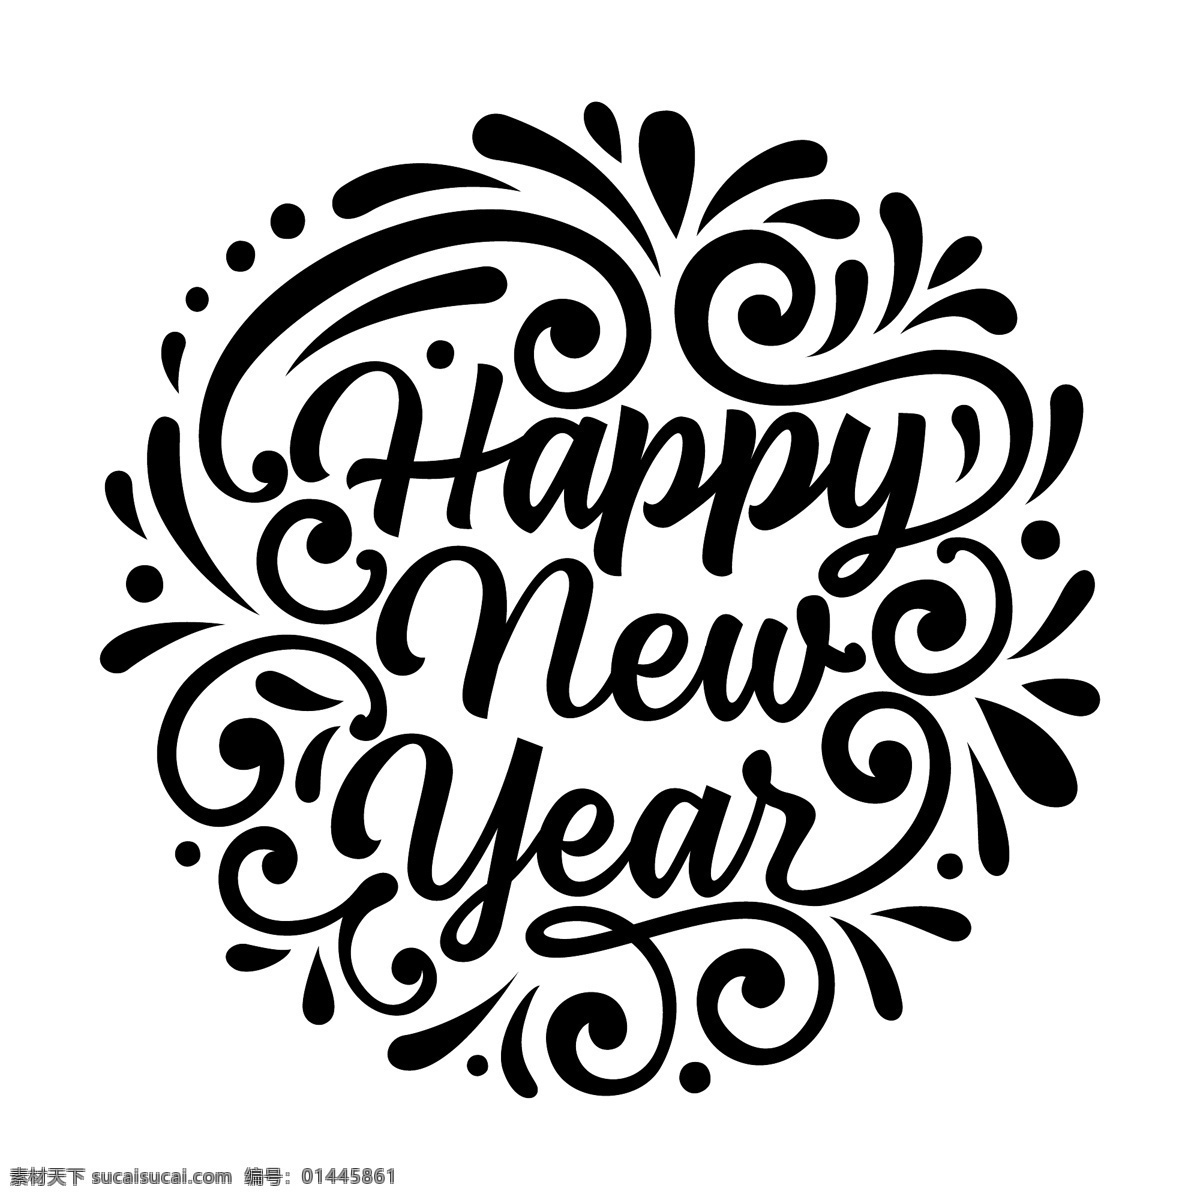 新年快乐 手写英文 英文手写 happy new year 新年 英文 字体设计 花体字